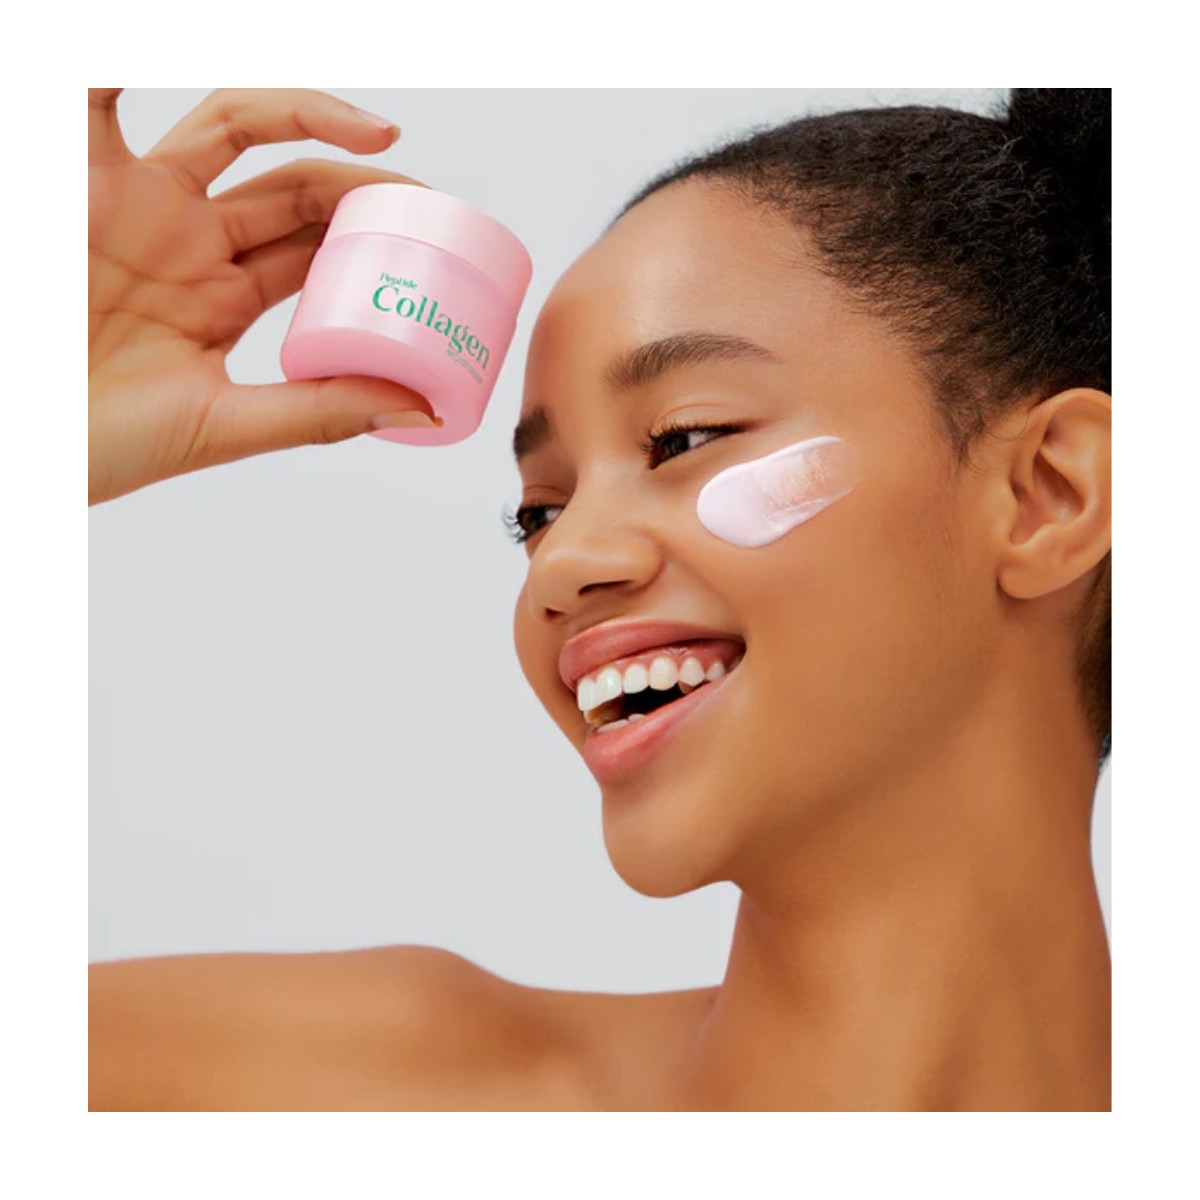 Emulsiones y Cremas al mejor precio: It's Skin Peptide Collagen Moisturizer Crema Reafirmante de It´s Skin en Skin Thinks - Piel Seca